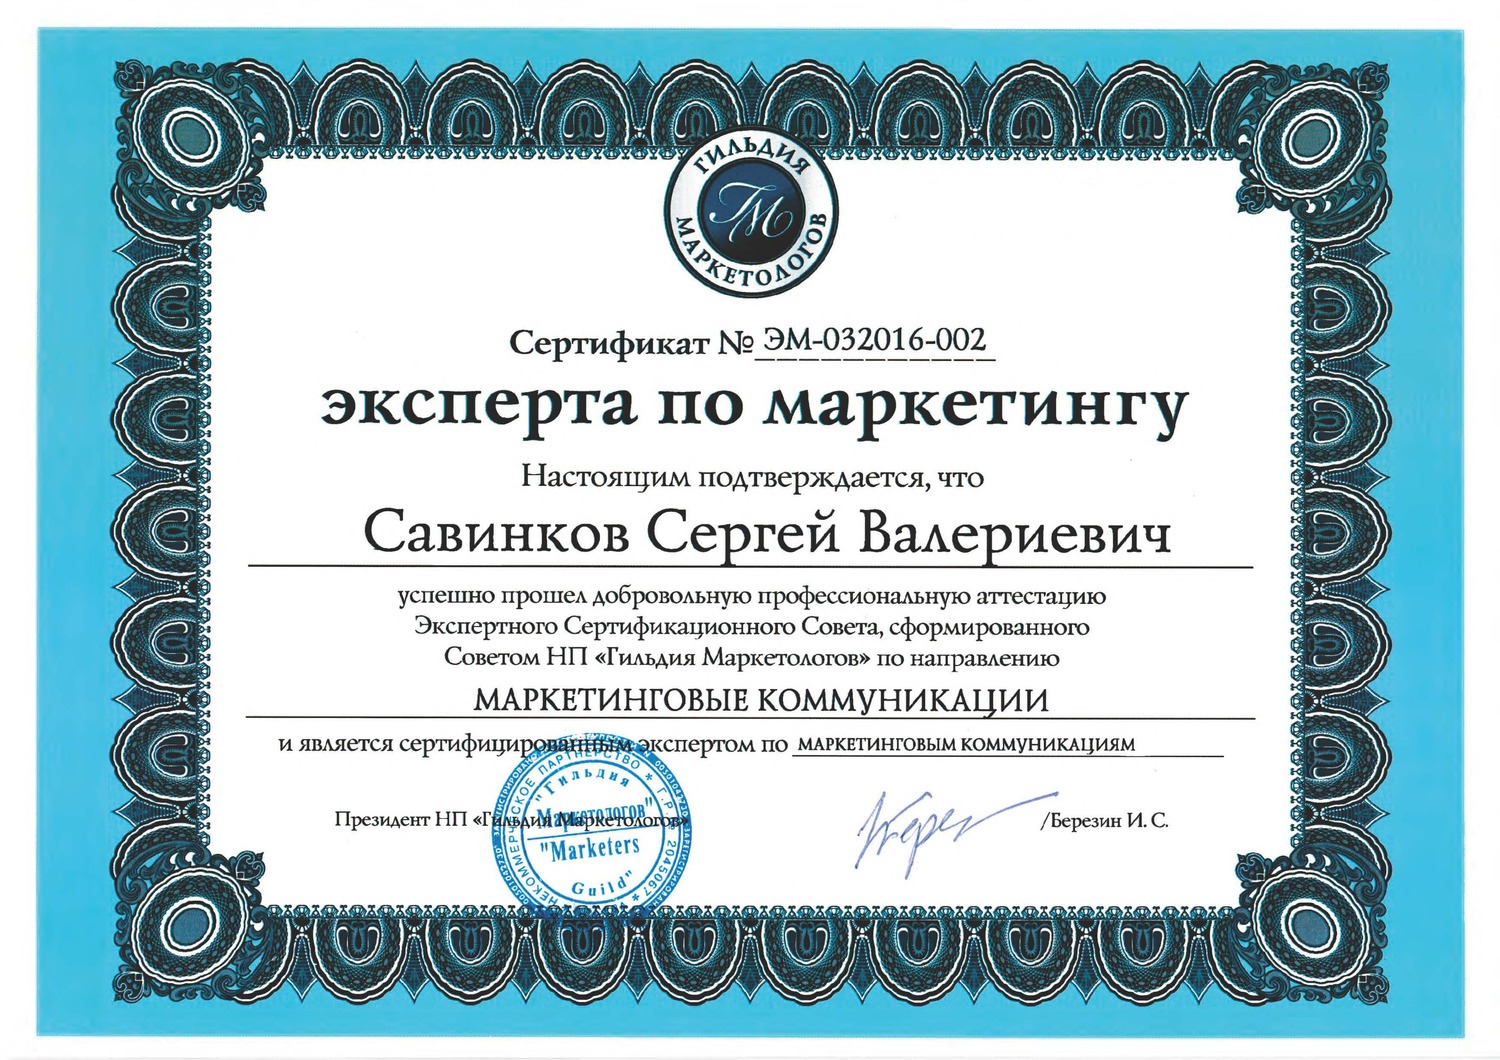 С.В. Савинков сертифицированный эксперт по маркетингу